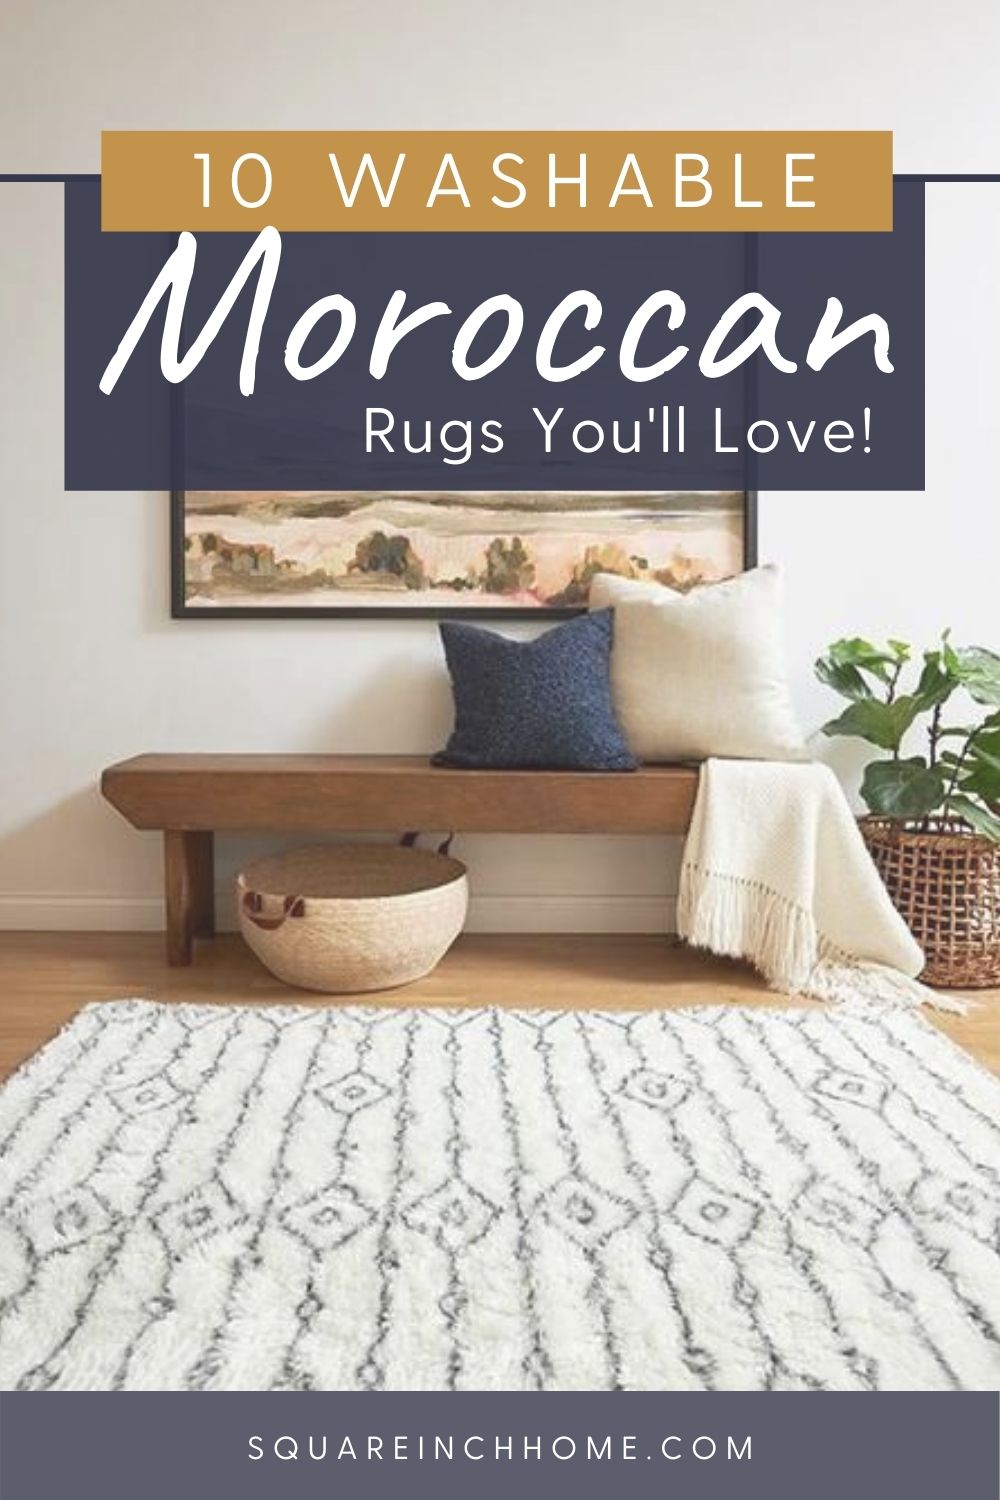 machine-washable moroccan rugs